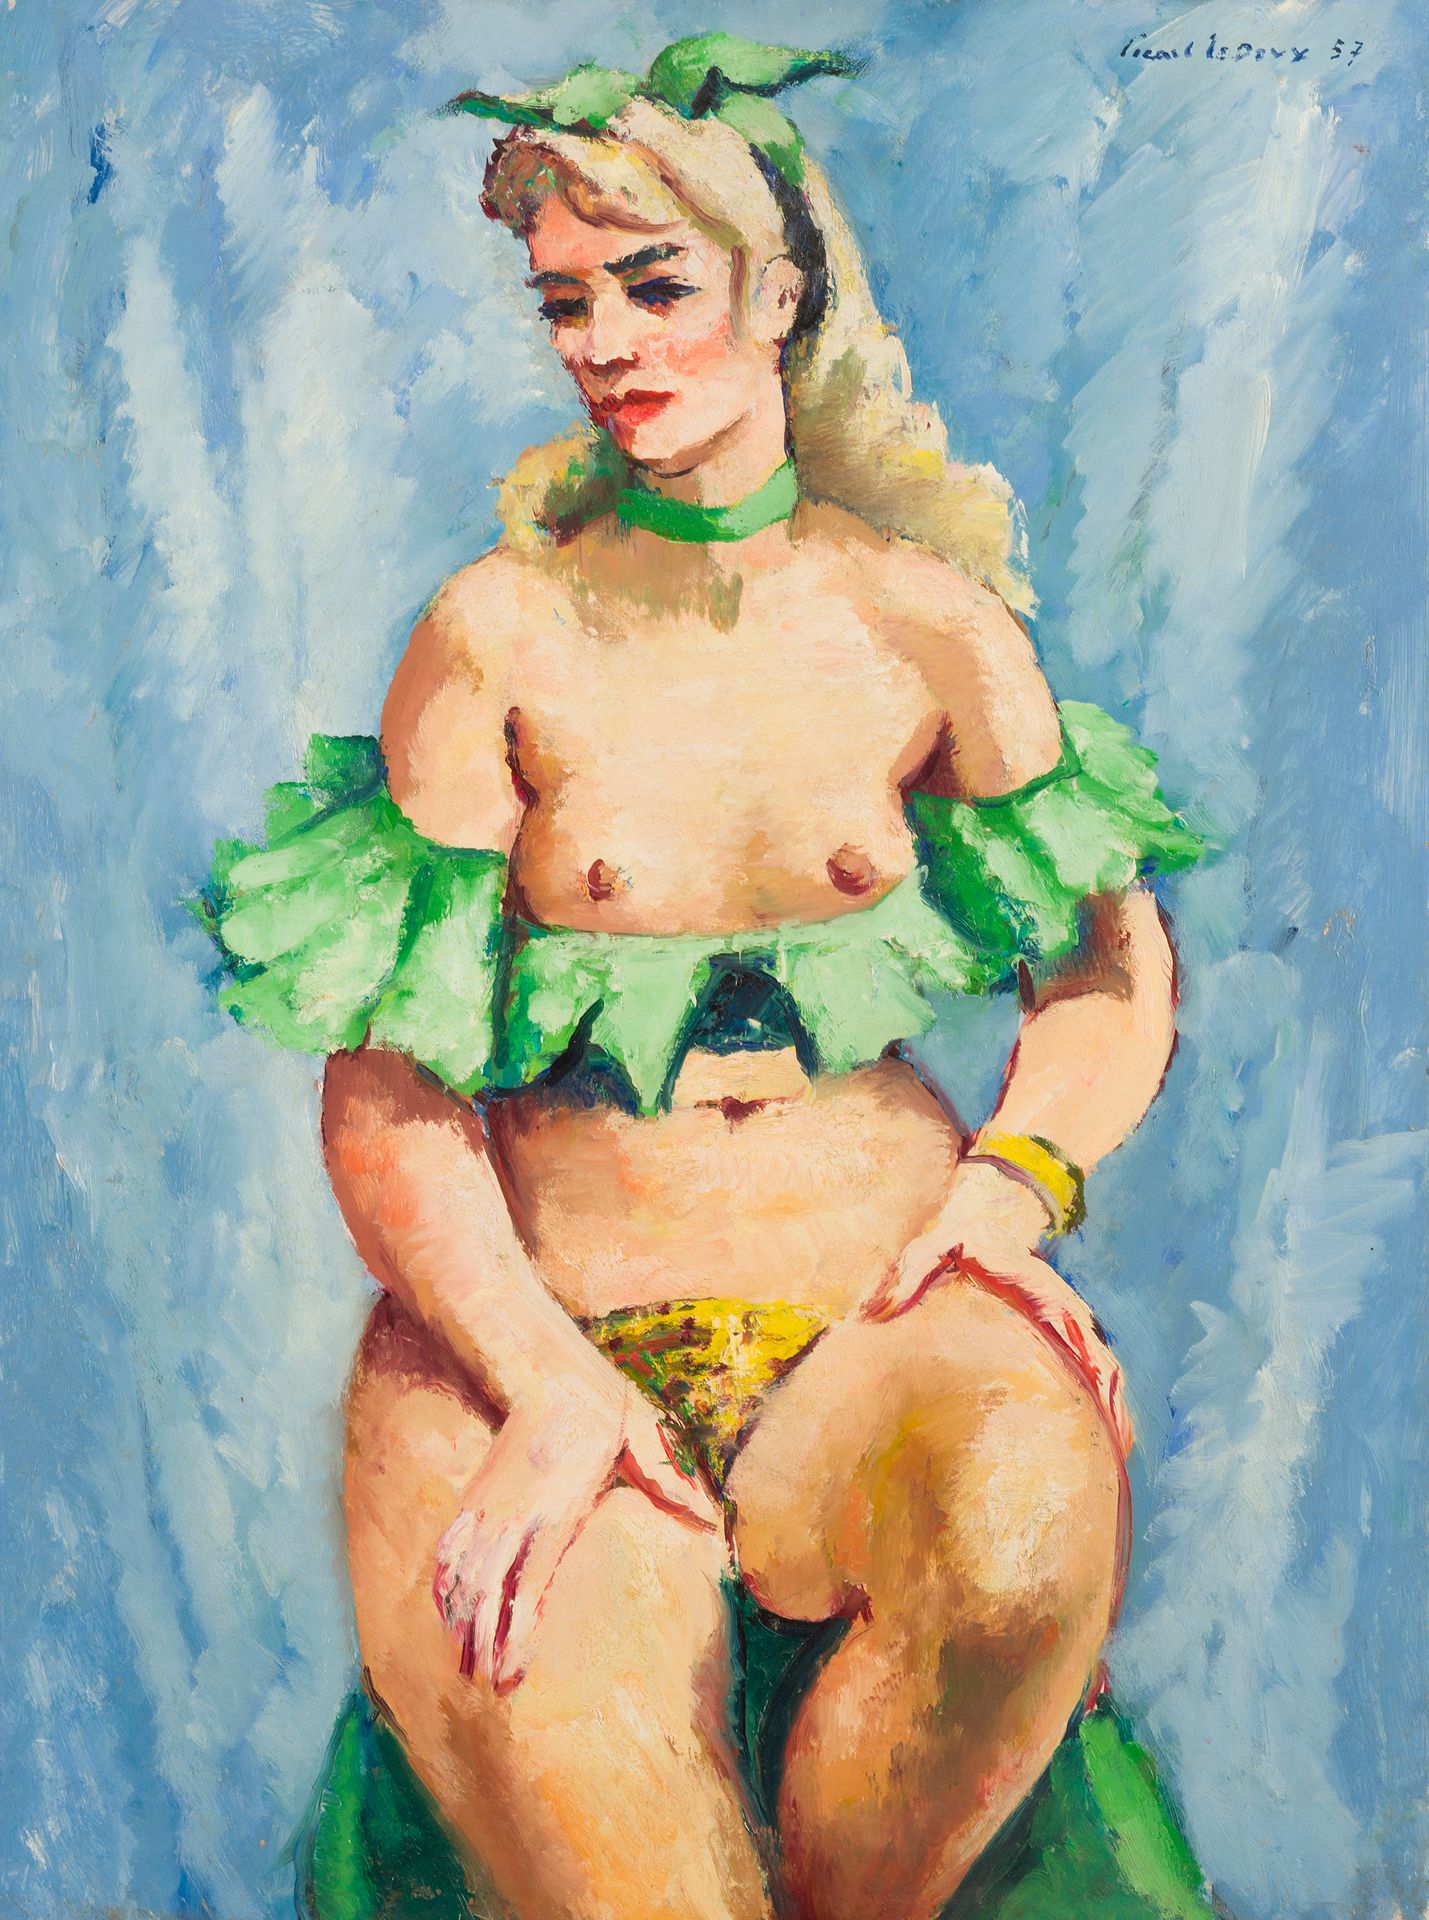 Null 查尔斯-皮卡特-勒杜 (1881-1959)
绿色舞者, 1957年
伊索尔上的油彩
右上方有签名
81 x 60 cm